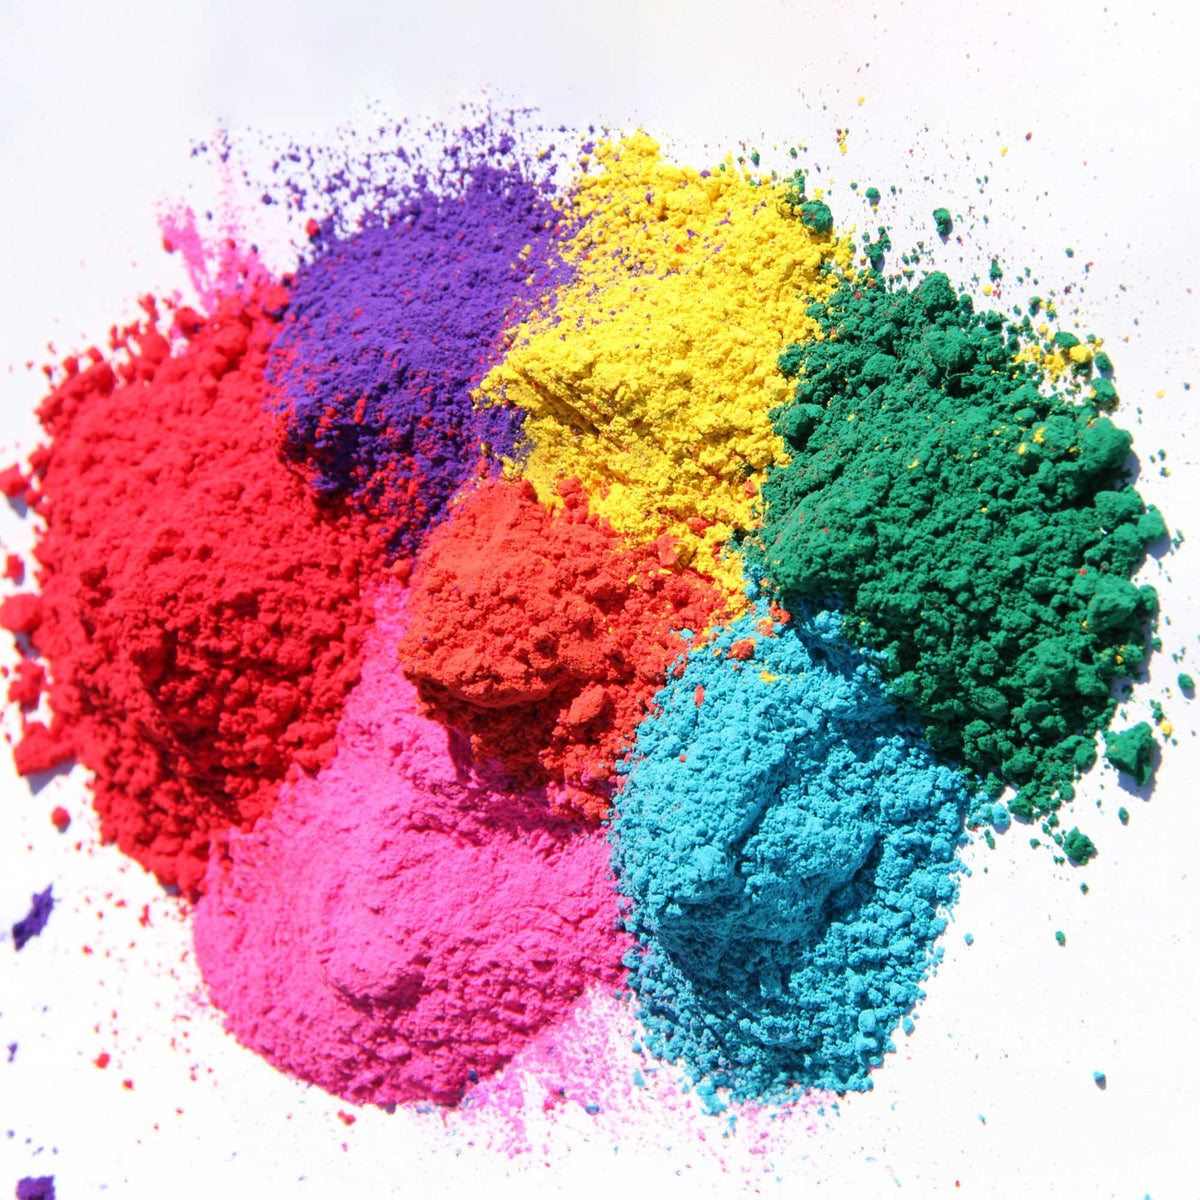 Powder Colour 500g